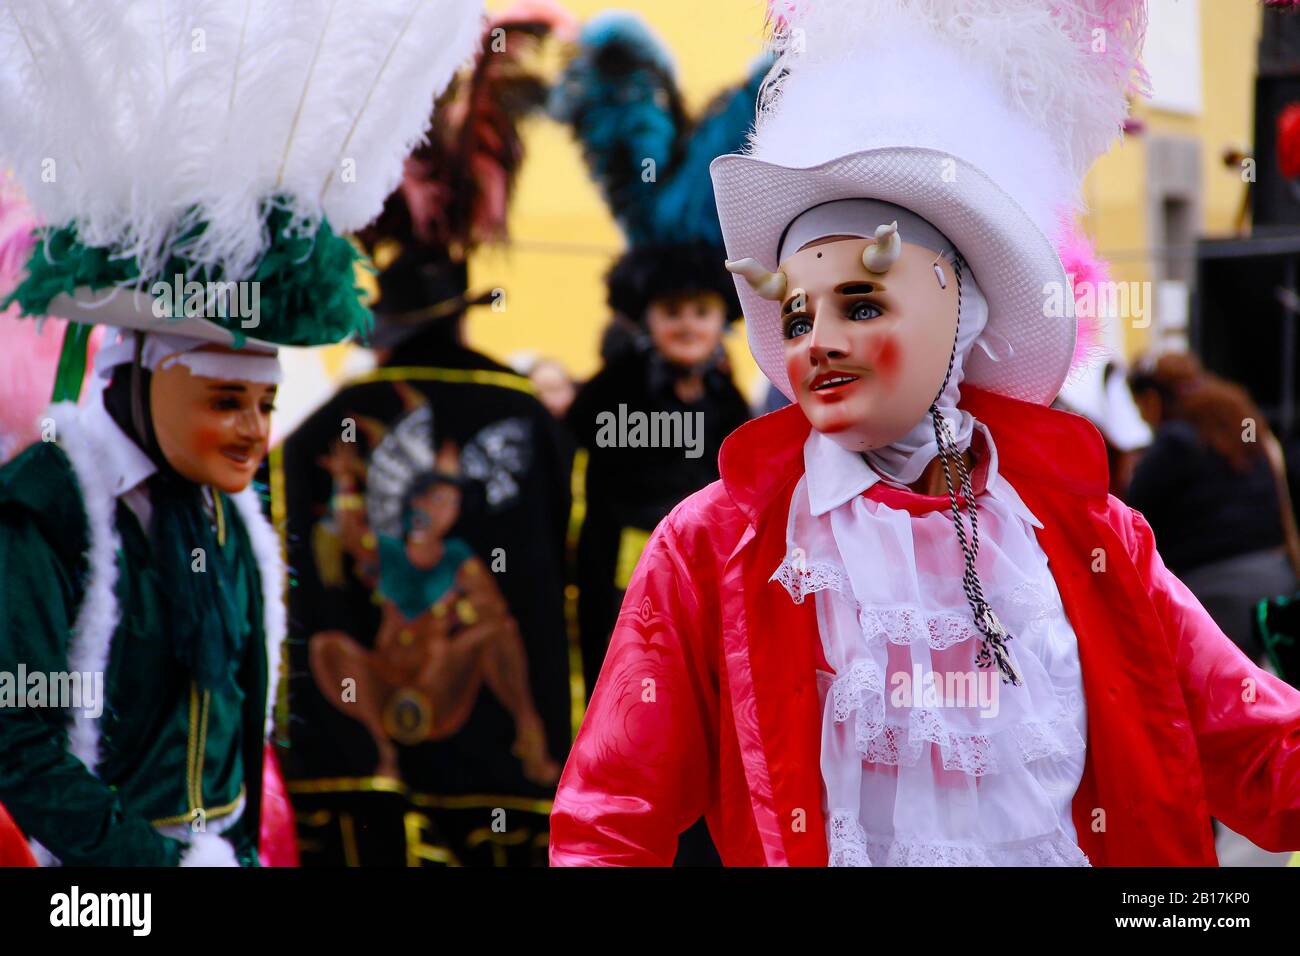 Huehues Mexico, ballerina che indossa un tradizionale costume popolare messicano e maschera ricca di colore. Scena del Carnevale. Carnevale Messicano Foto Stock